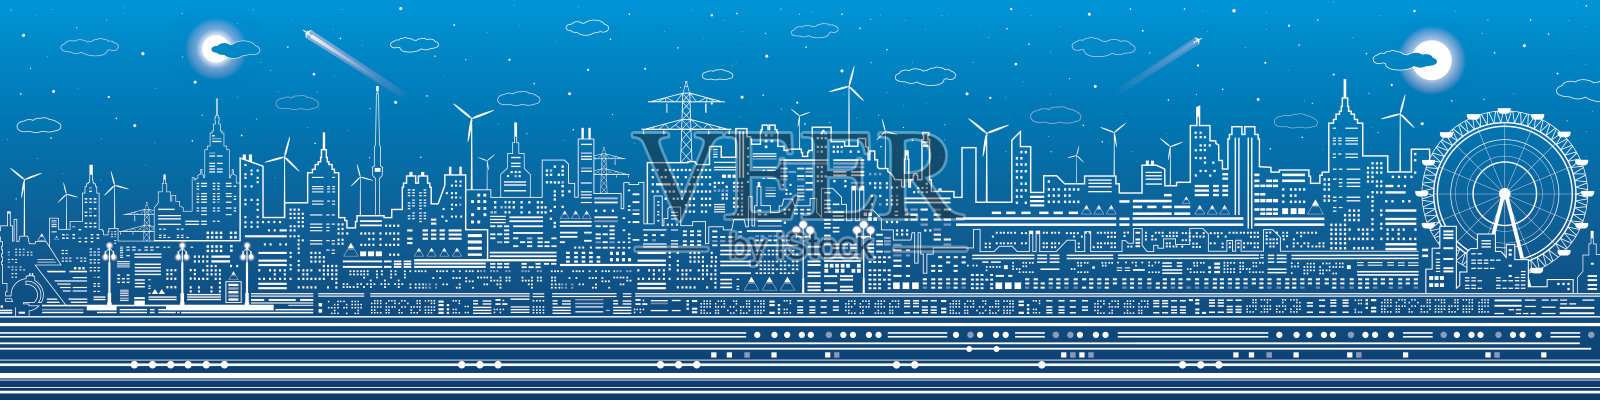 城市夜景，城镇基础设施插图，摩天轮，现代天际线，蓝色背景上的白线，矢量设计艺术插画图片素材